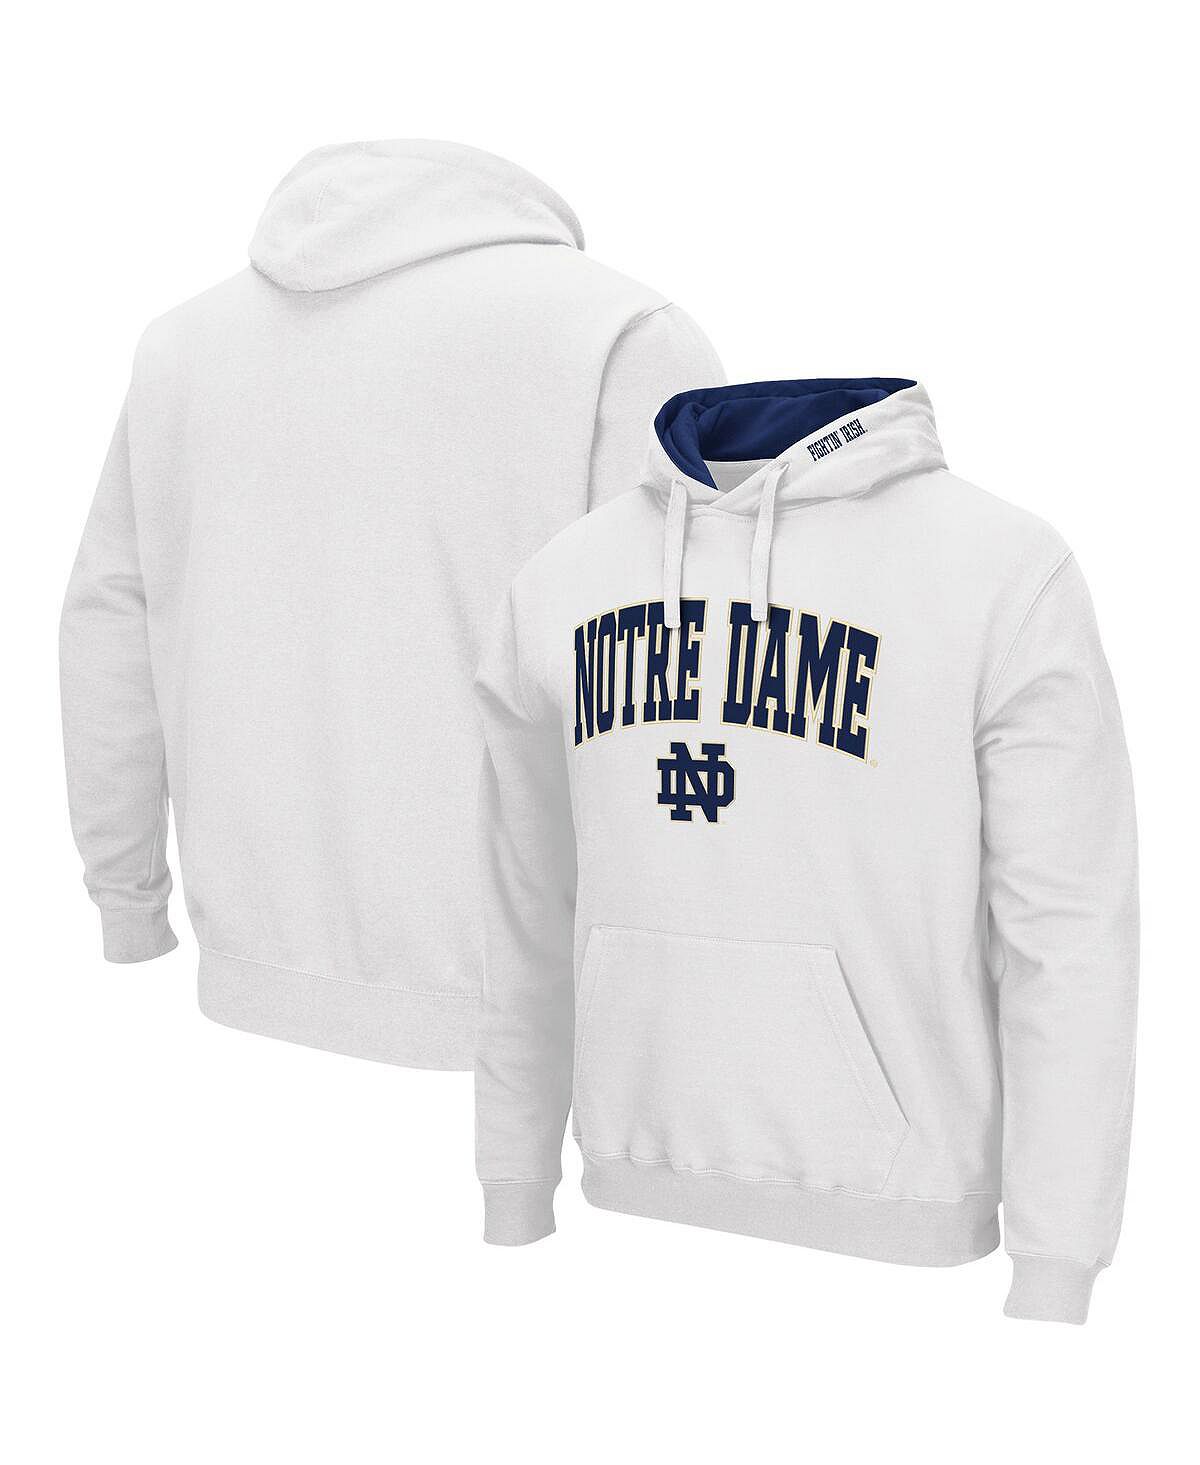 Мужской белый пуловер с капюшоном Notre Dame Fighting Irish Arch и Logo 3.0 Colosseum